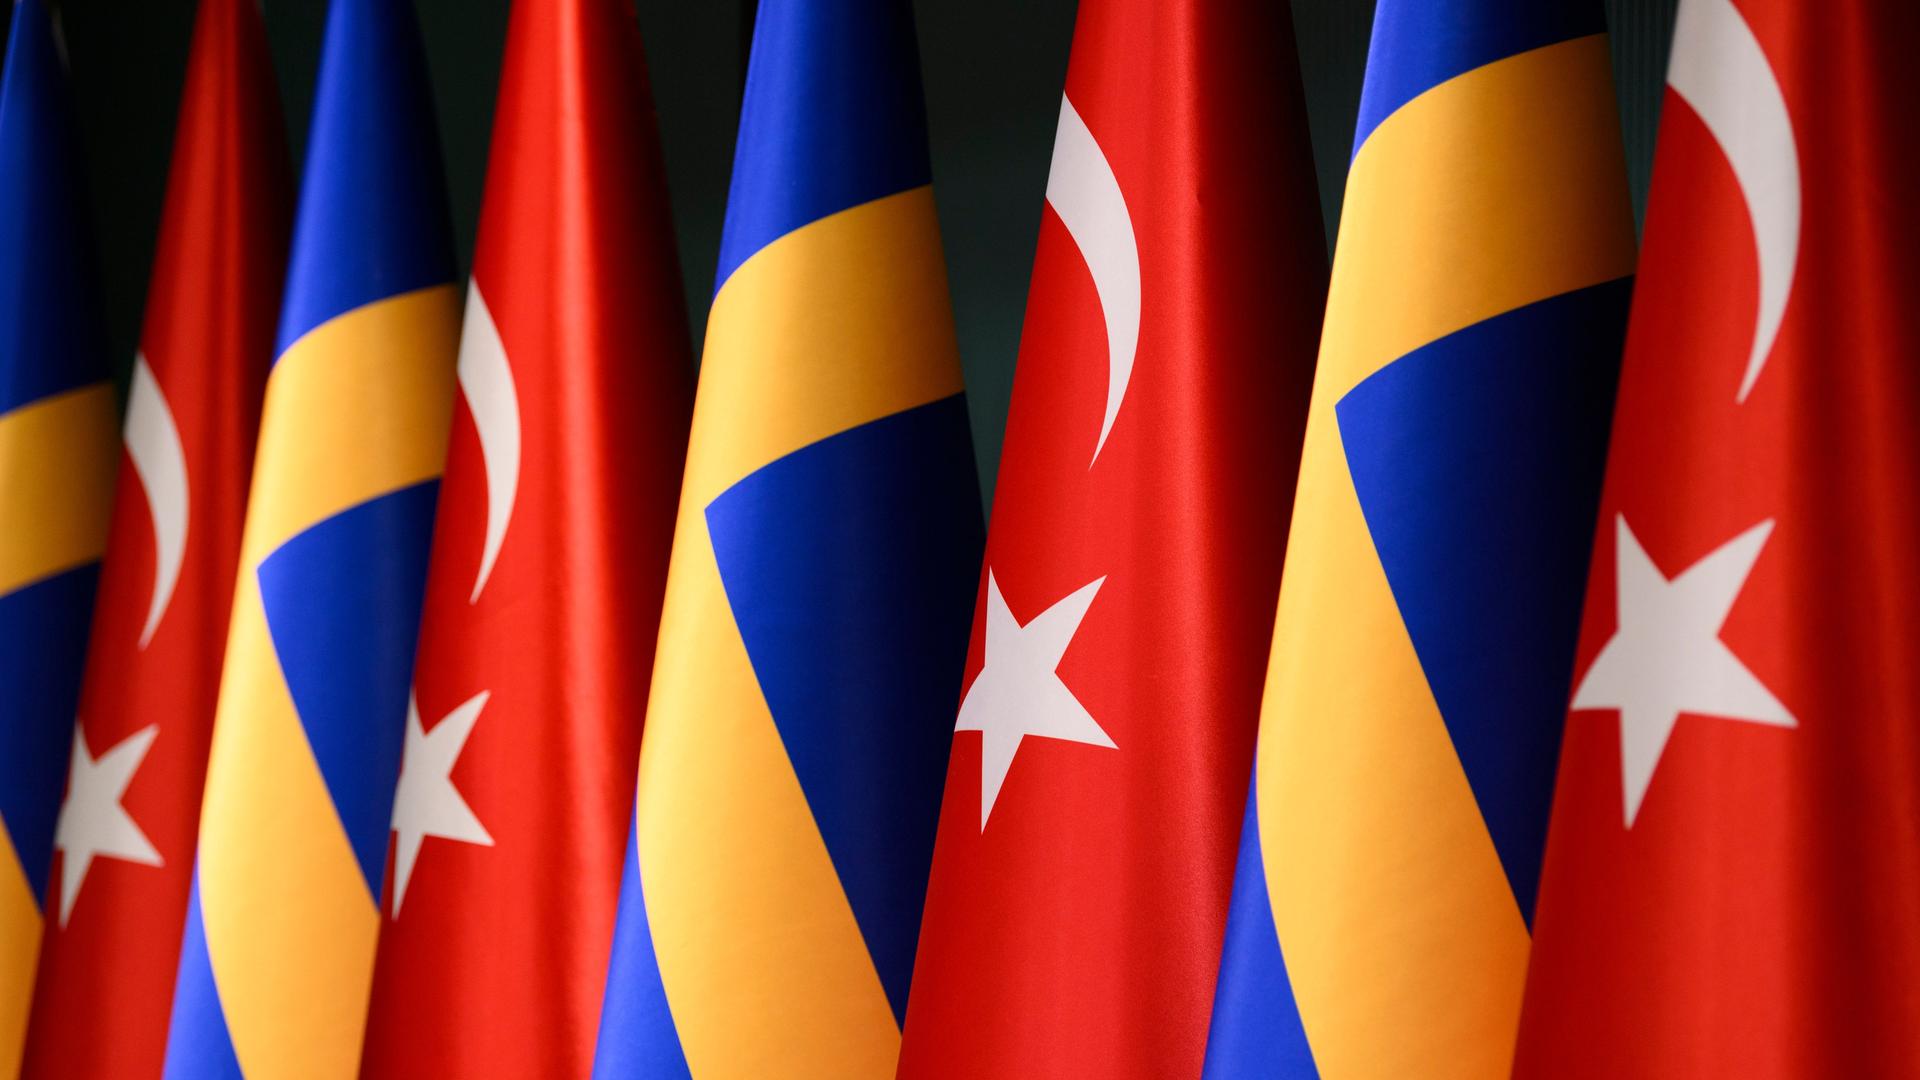 Mehrere schwedische und türkische Fahnen hängen nebeneinander.